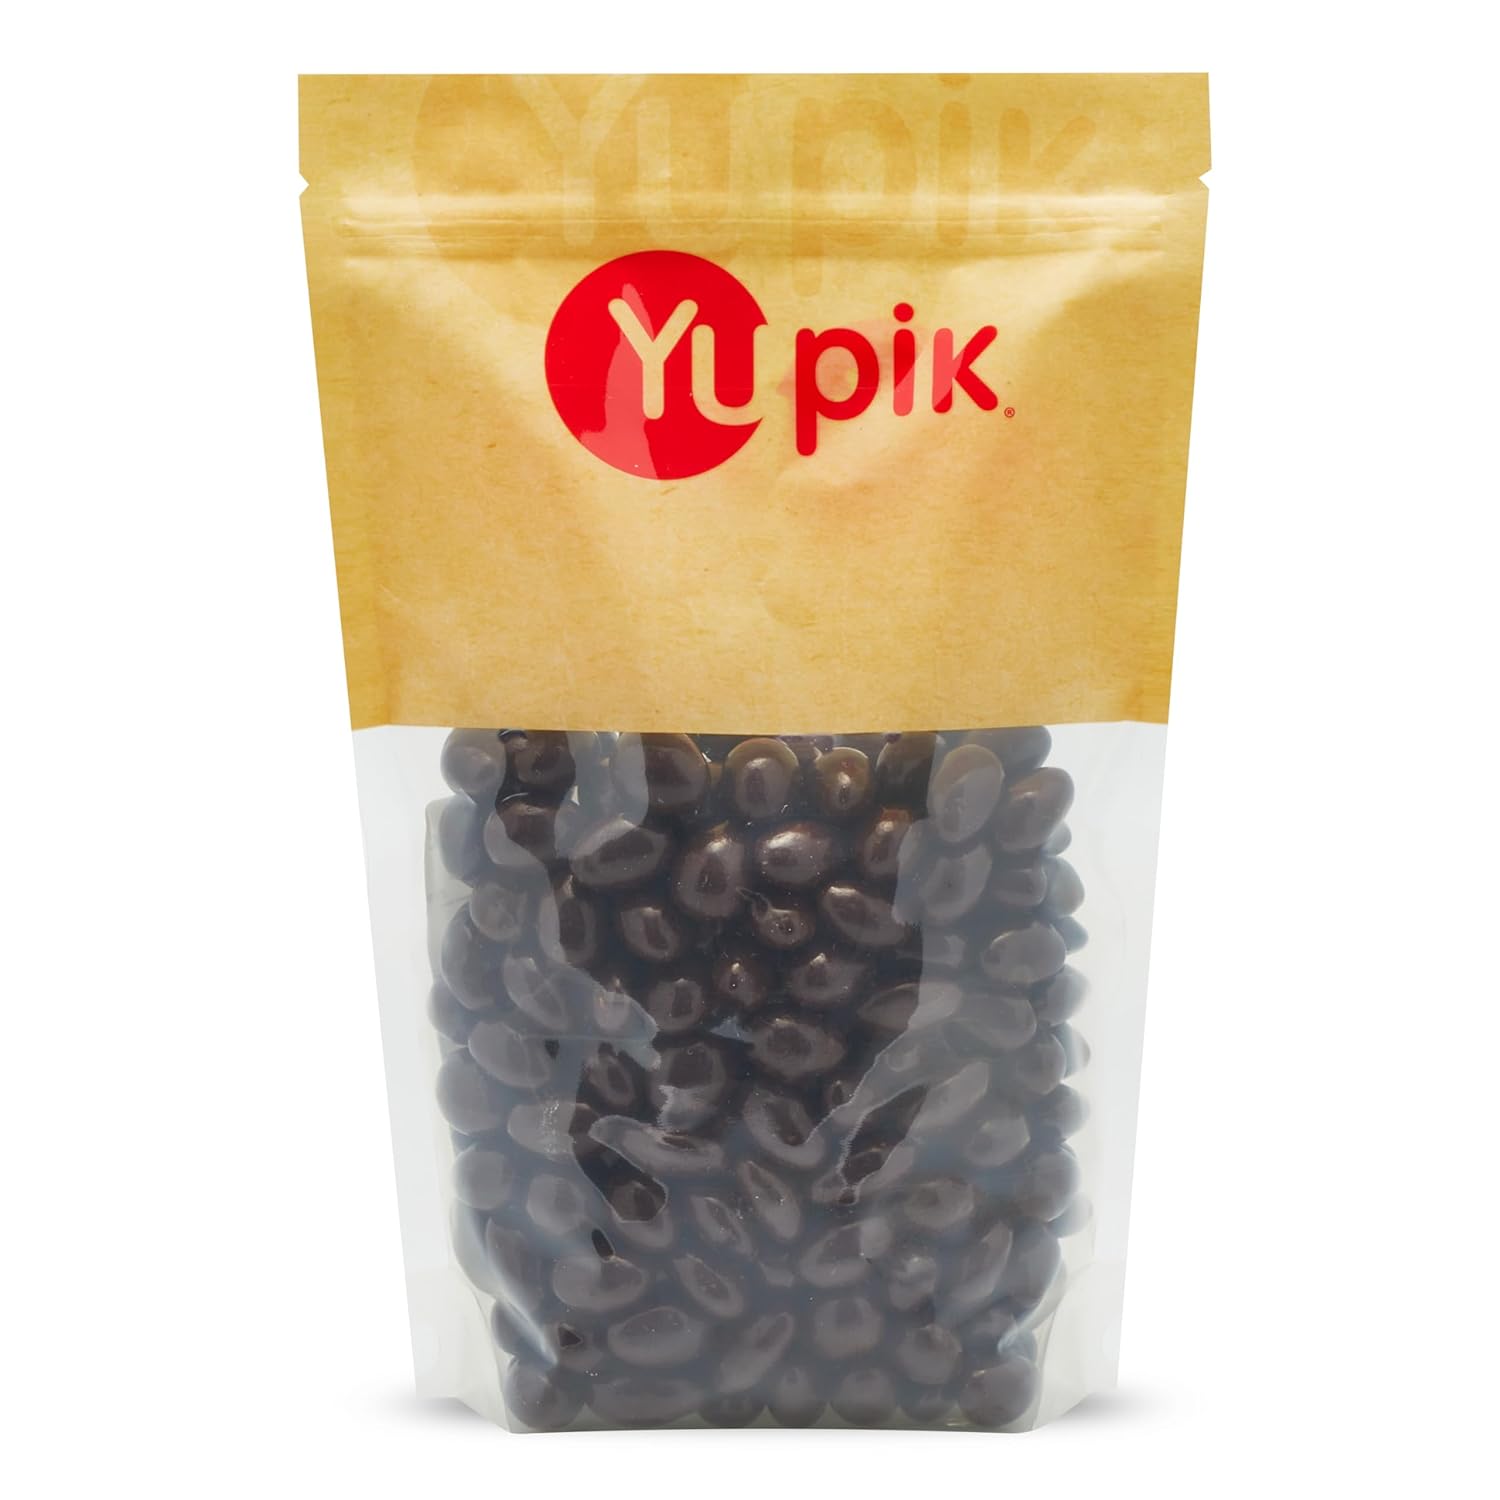 Yupik 60% Dark Chocolate Covered Almonds, 2.2 lb